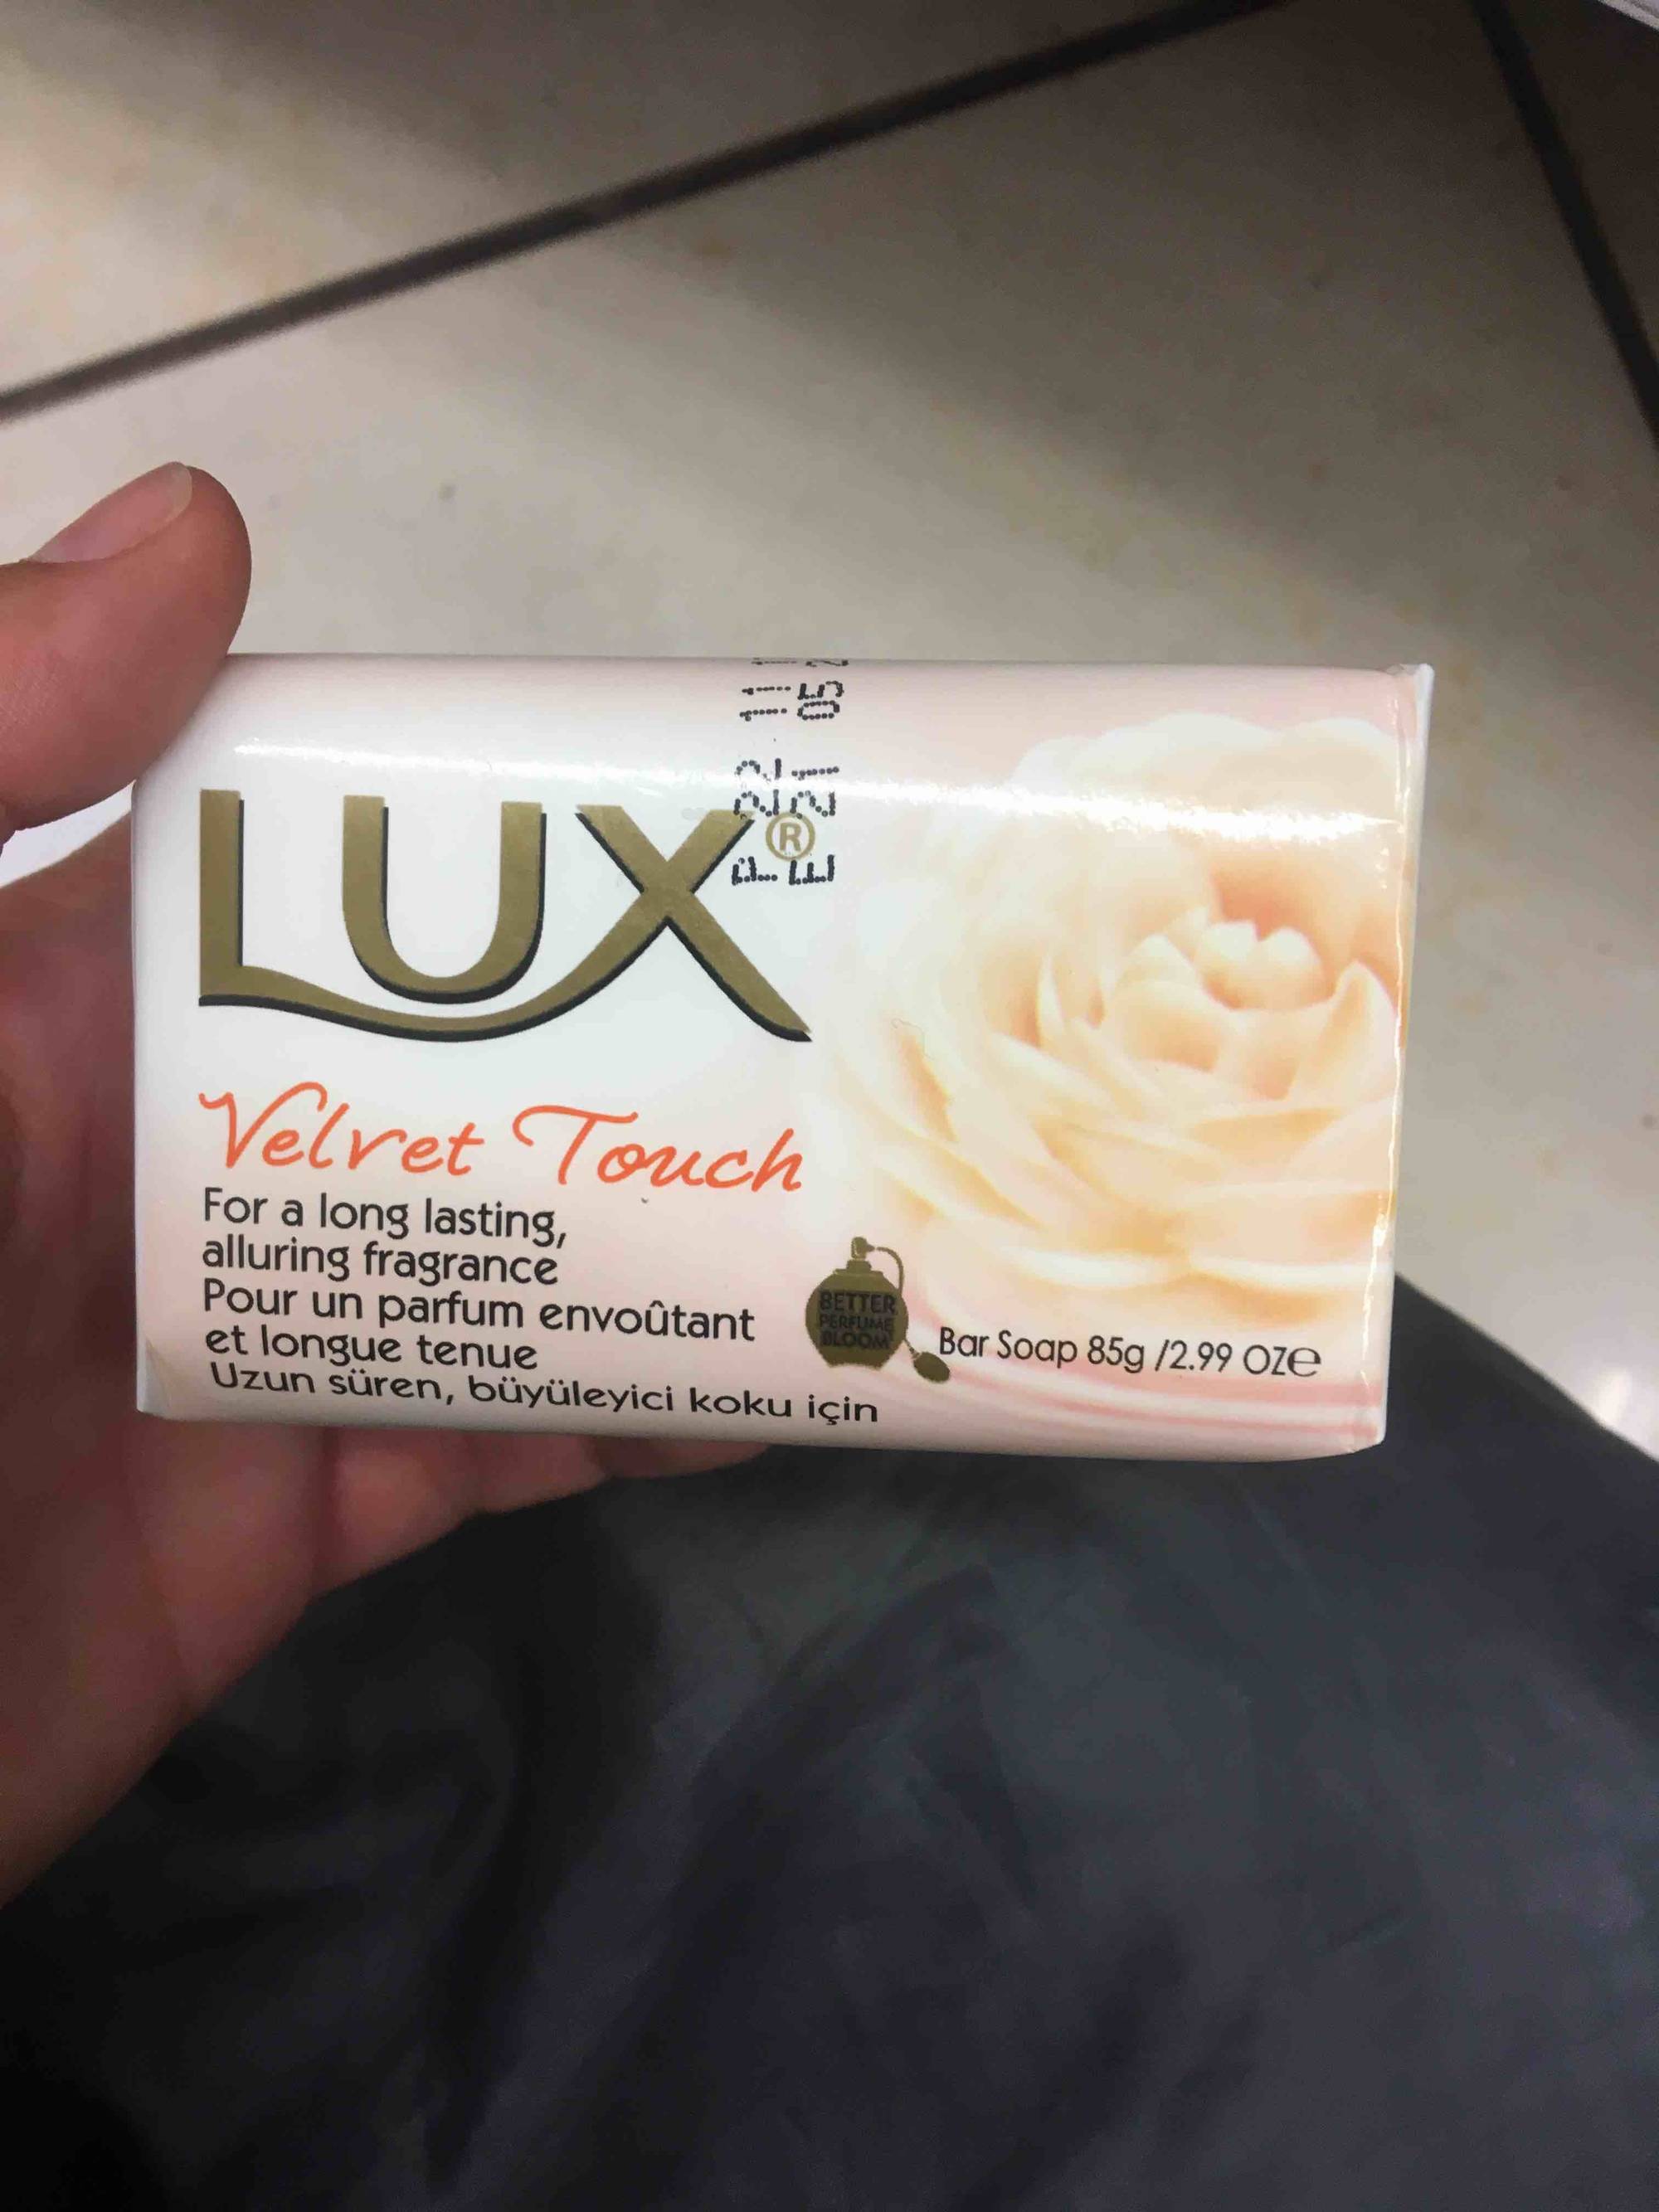 LUX - Velvet touch - Bar soap